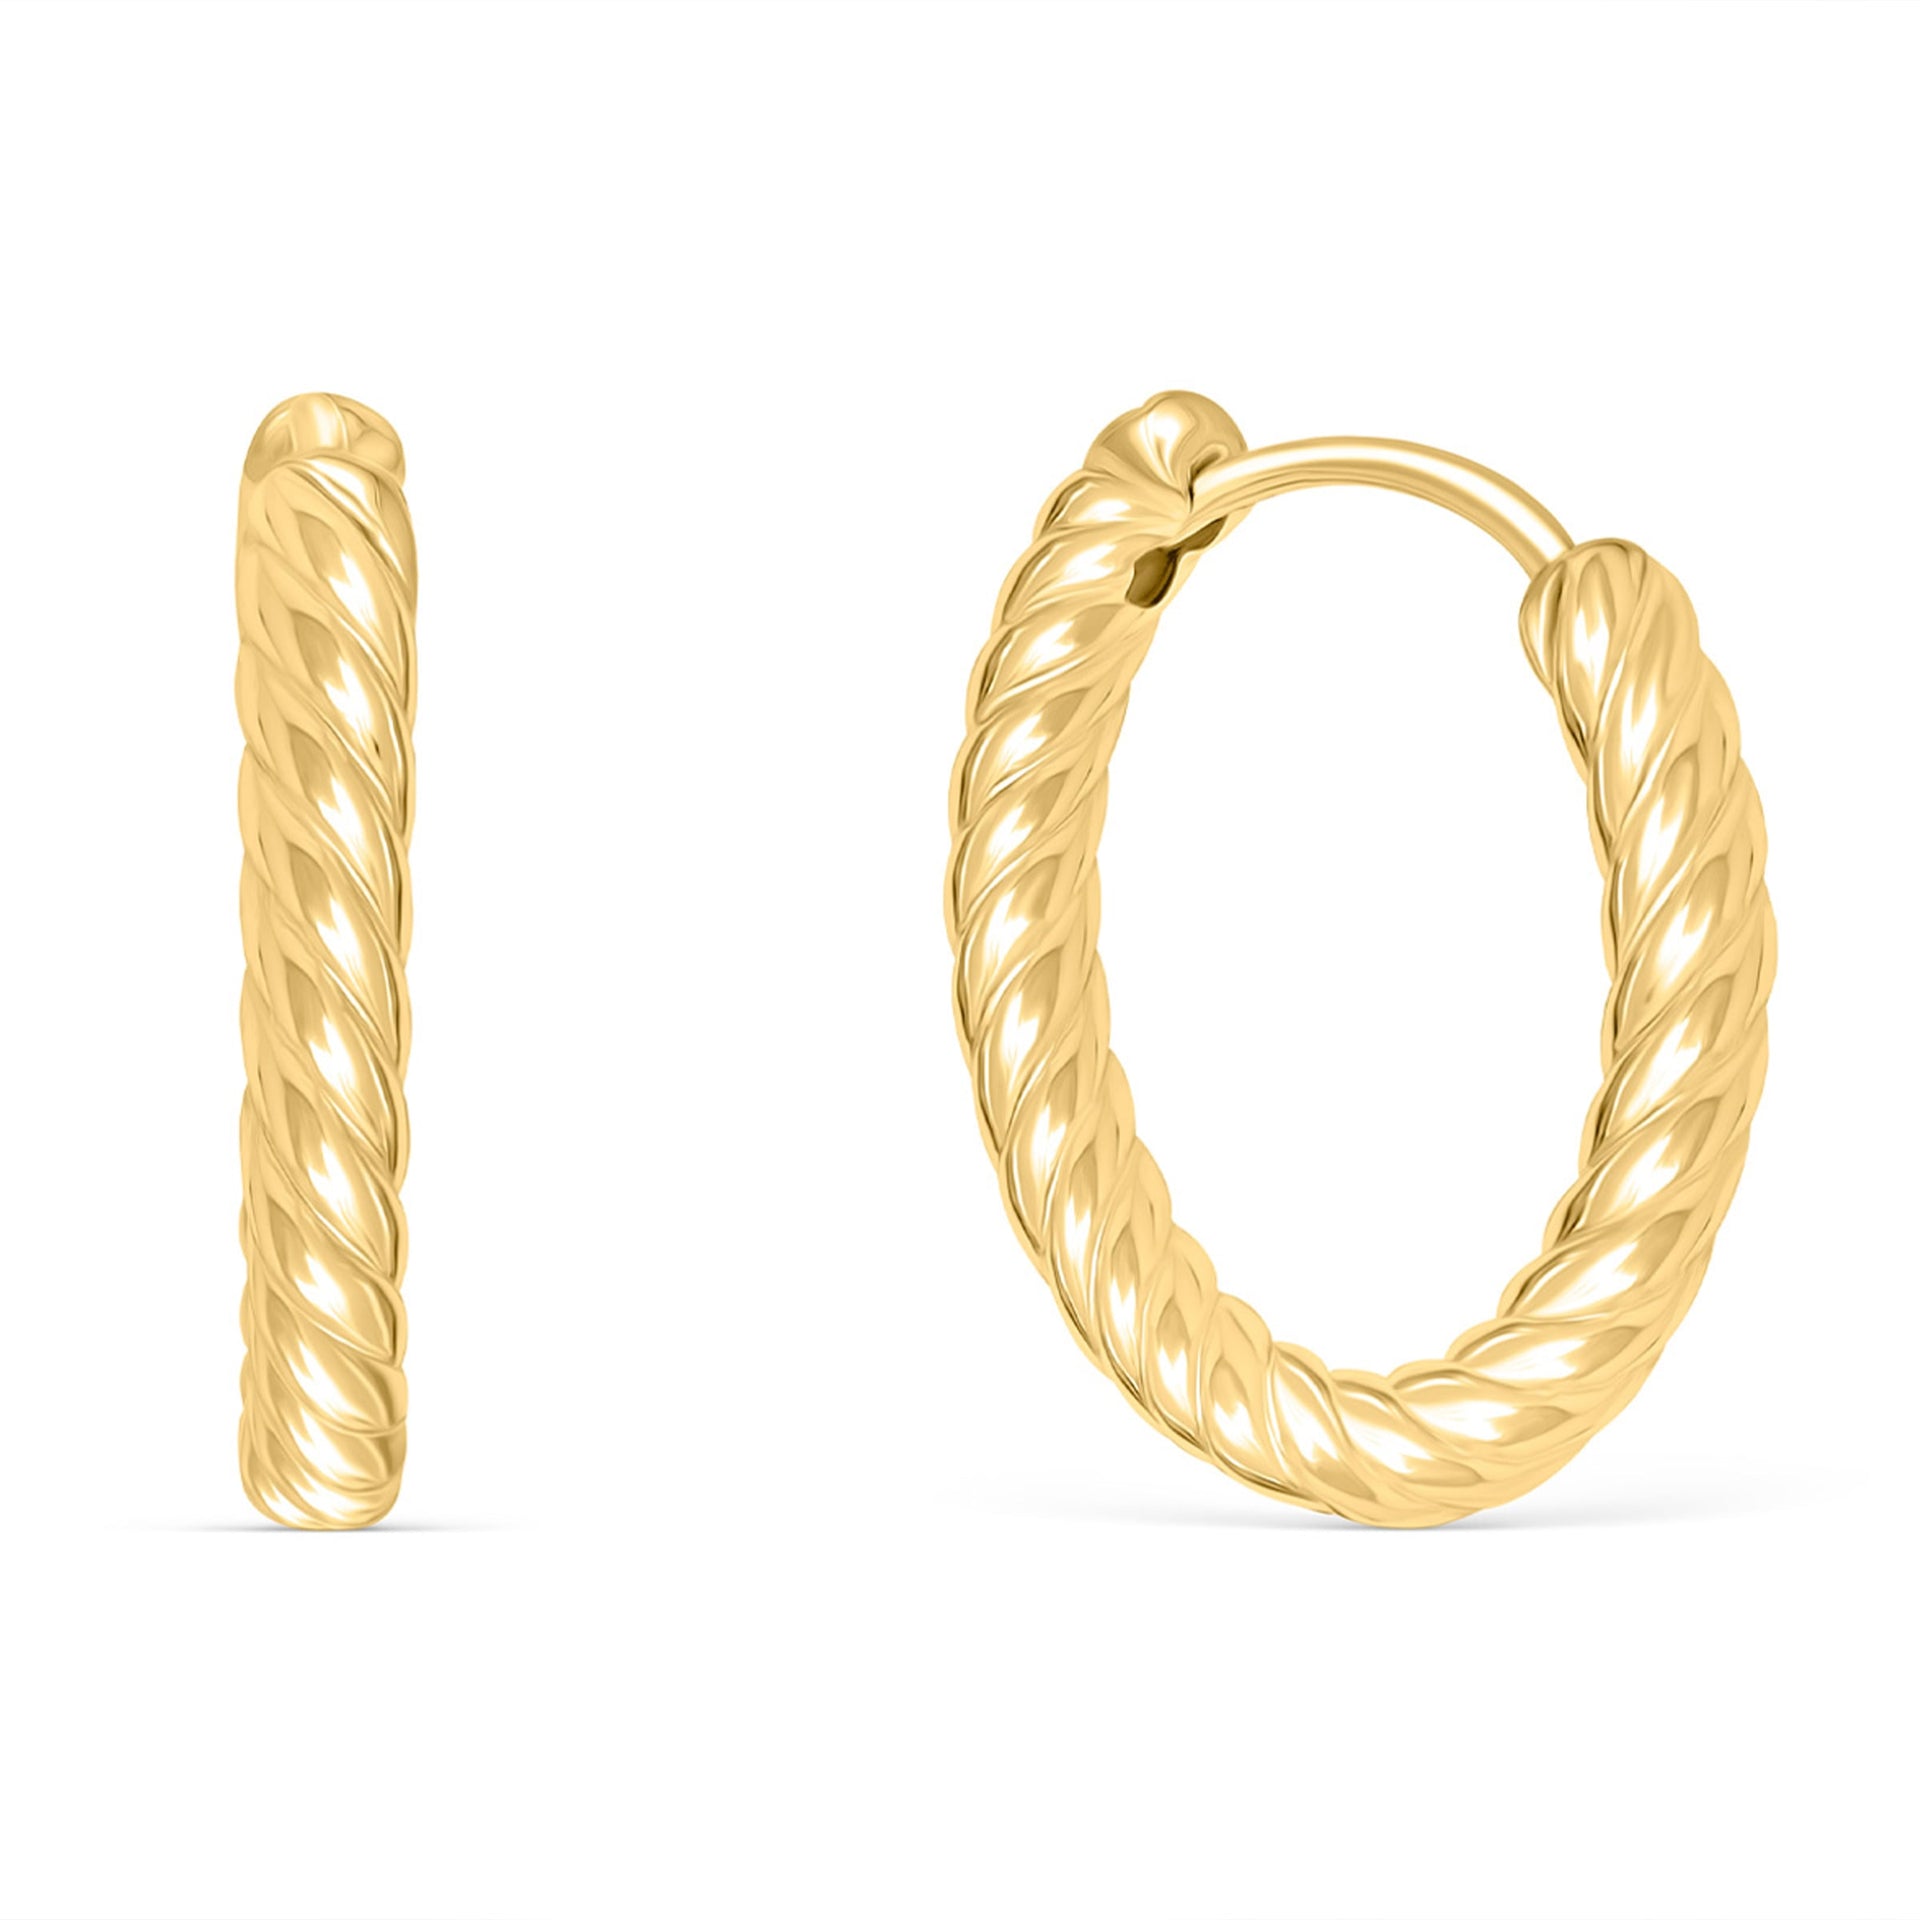 Cute gold twisted hoop earrings